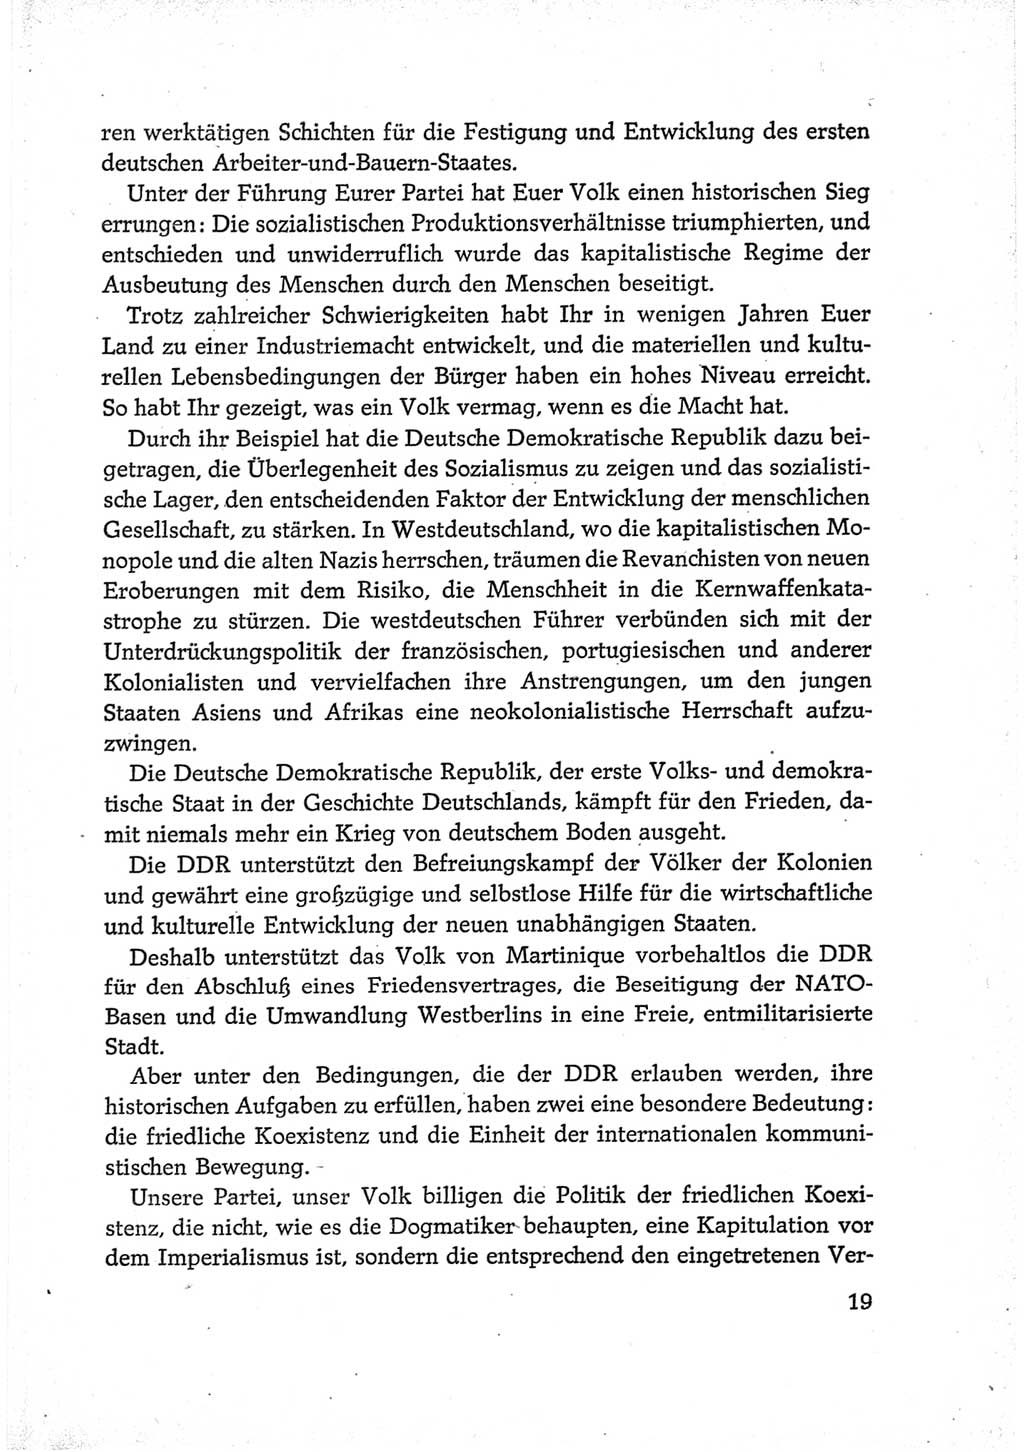 Protokoll der Verhandlungen des Ⅵ. Parteitages der Sozialistischen Einheitspartei Deutschlands (SED) [Deutsche Demokratische Republik (DDR)] 1963, Band Ⅲ, Seite 19 (Prot. Verh. Ⅵ. PT SED DDR 1963, Bd. Ⅲ, S. 19)